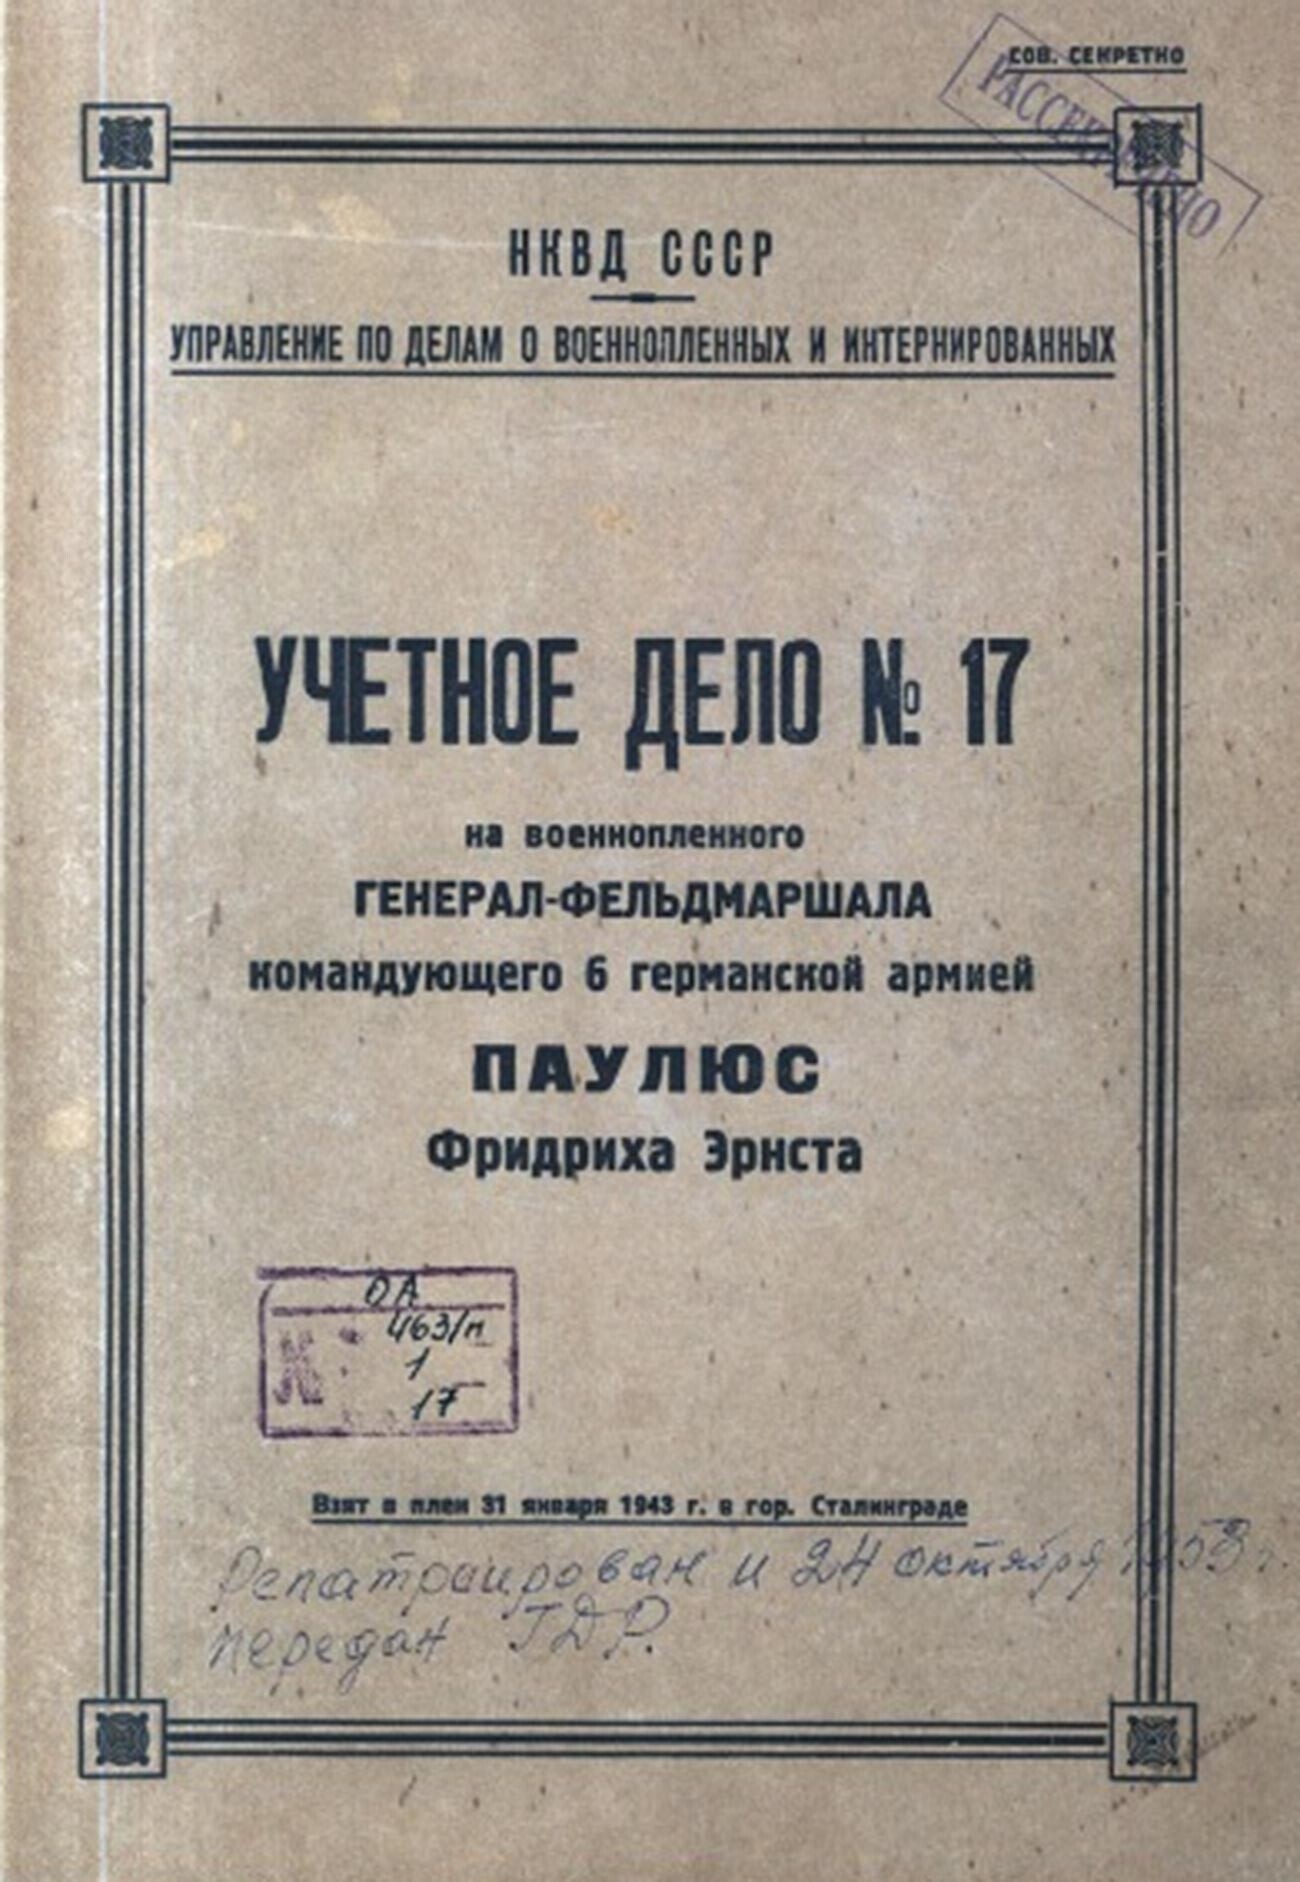 Arquivo de Paulus no NKVD
